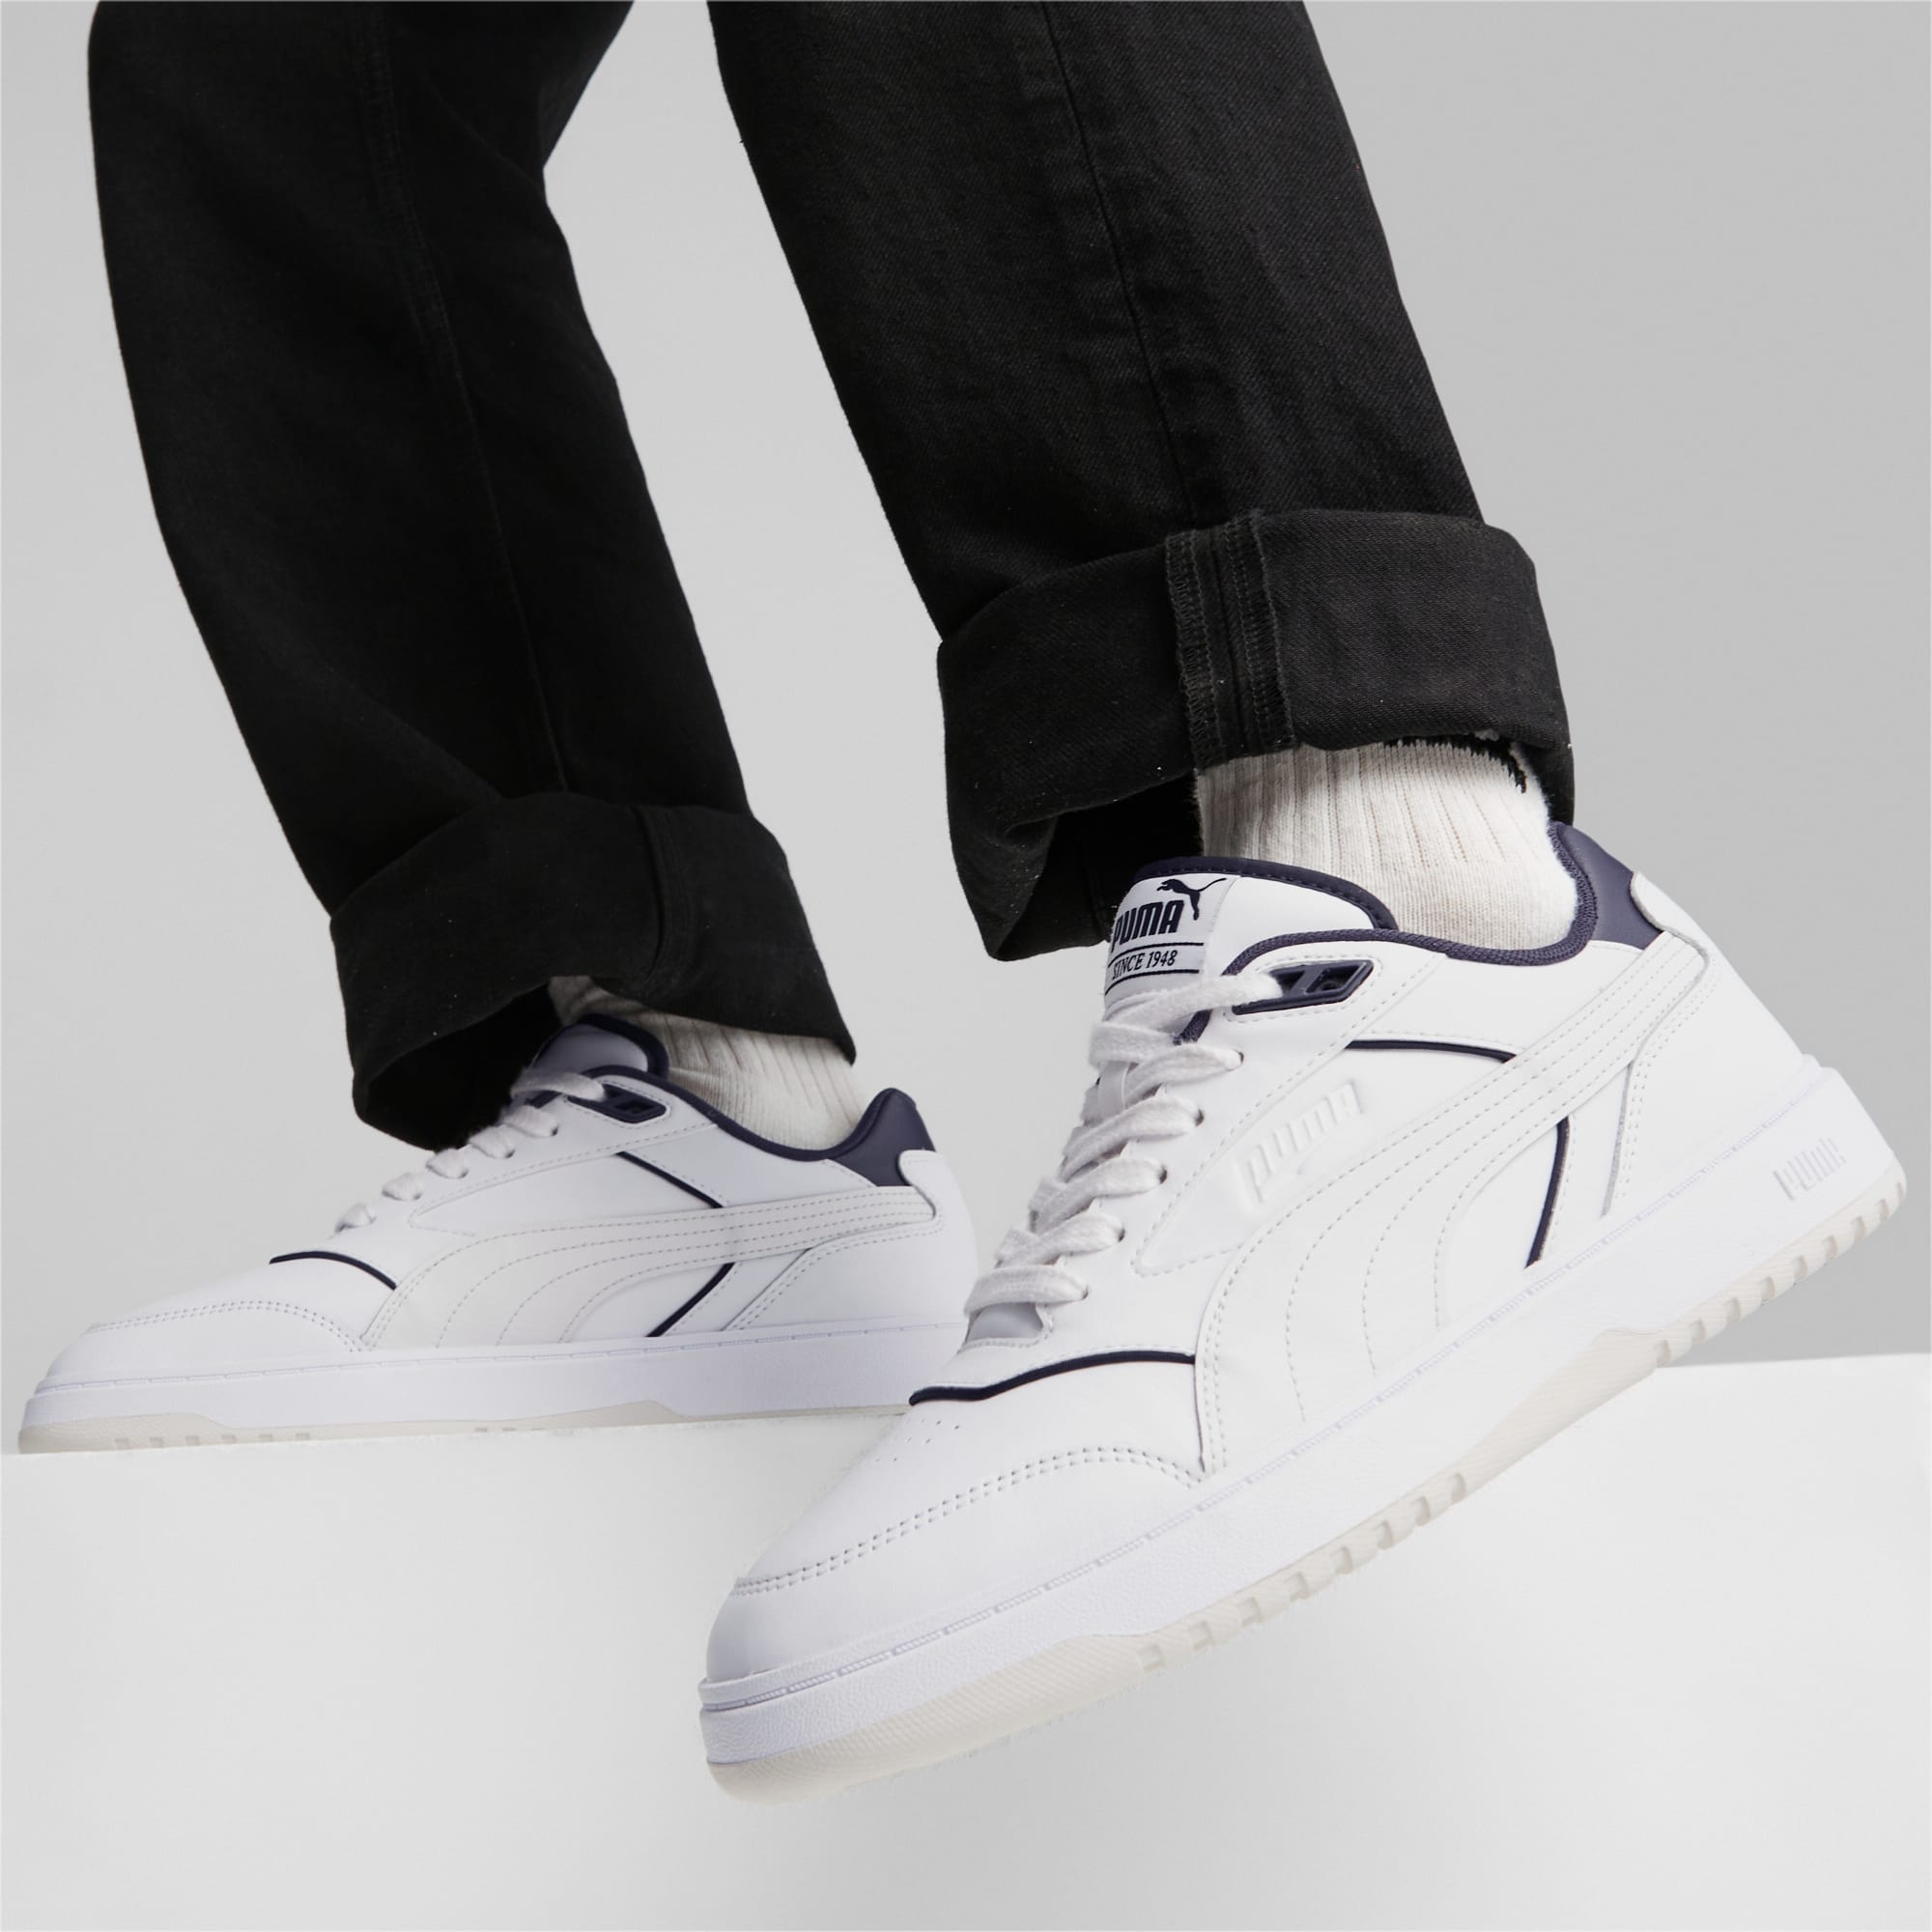 Chaussure Sneakers PUMA Doublecourt, Blanc/Bleu